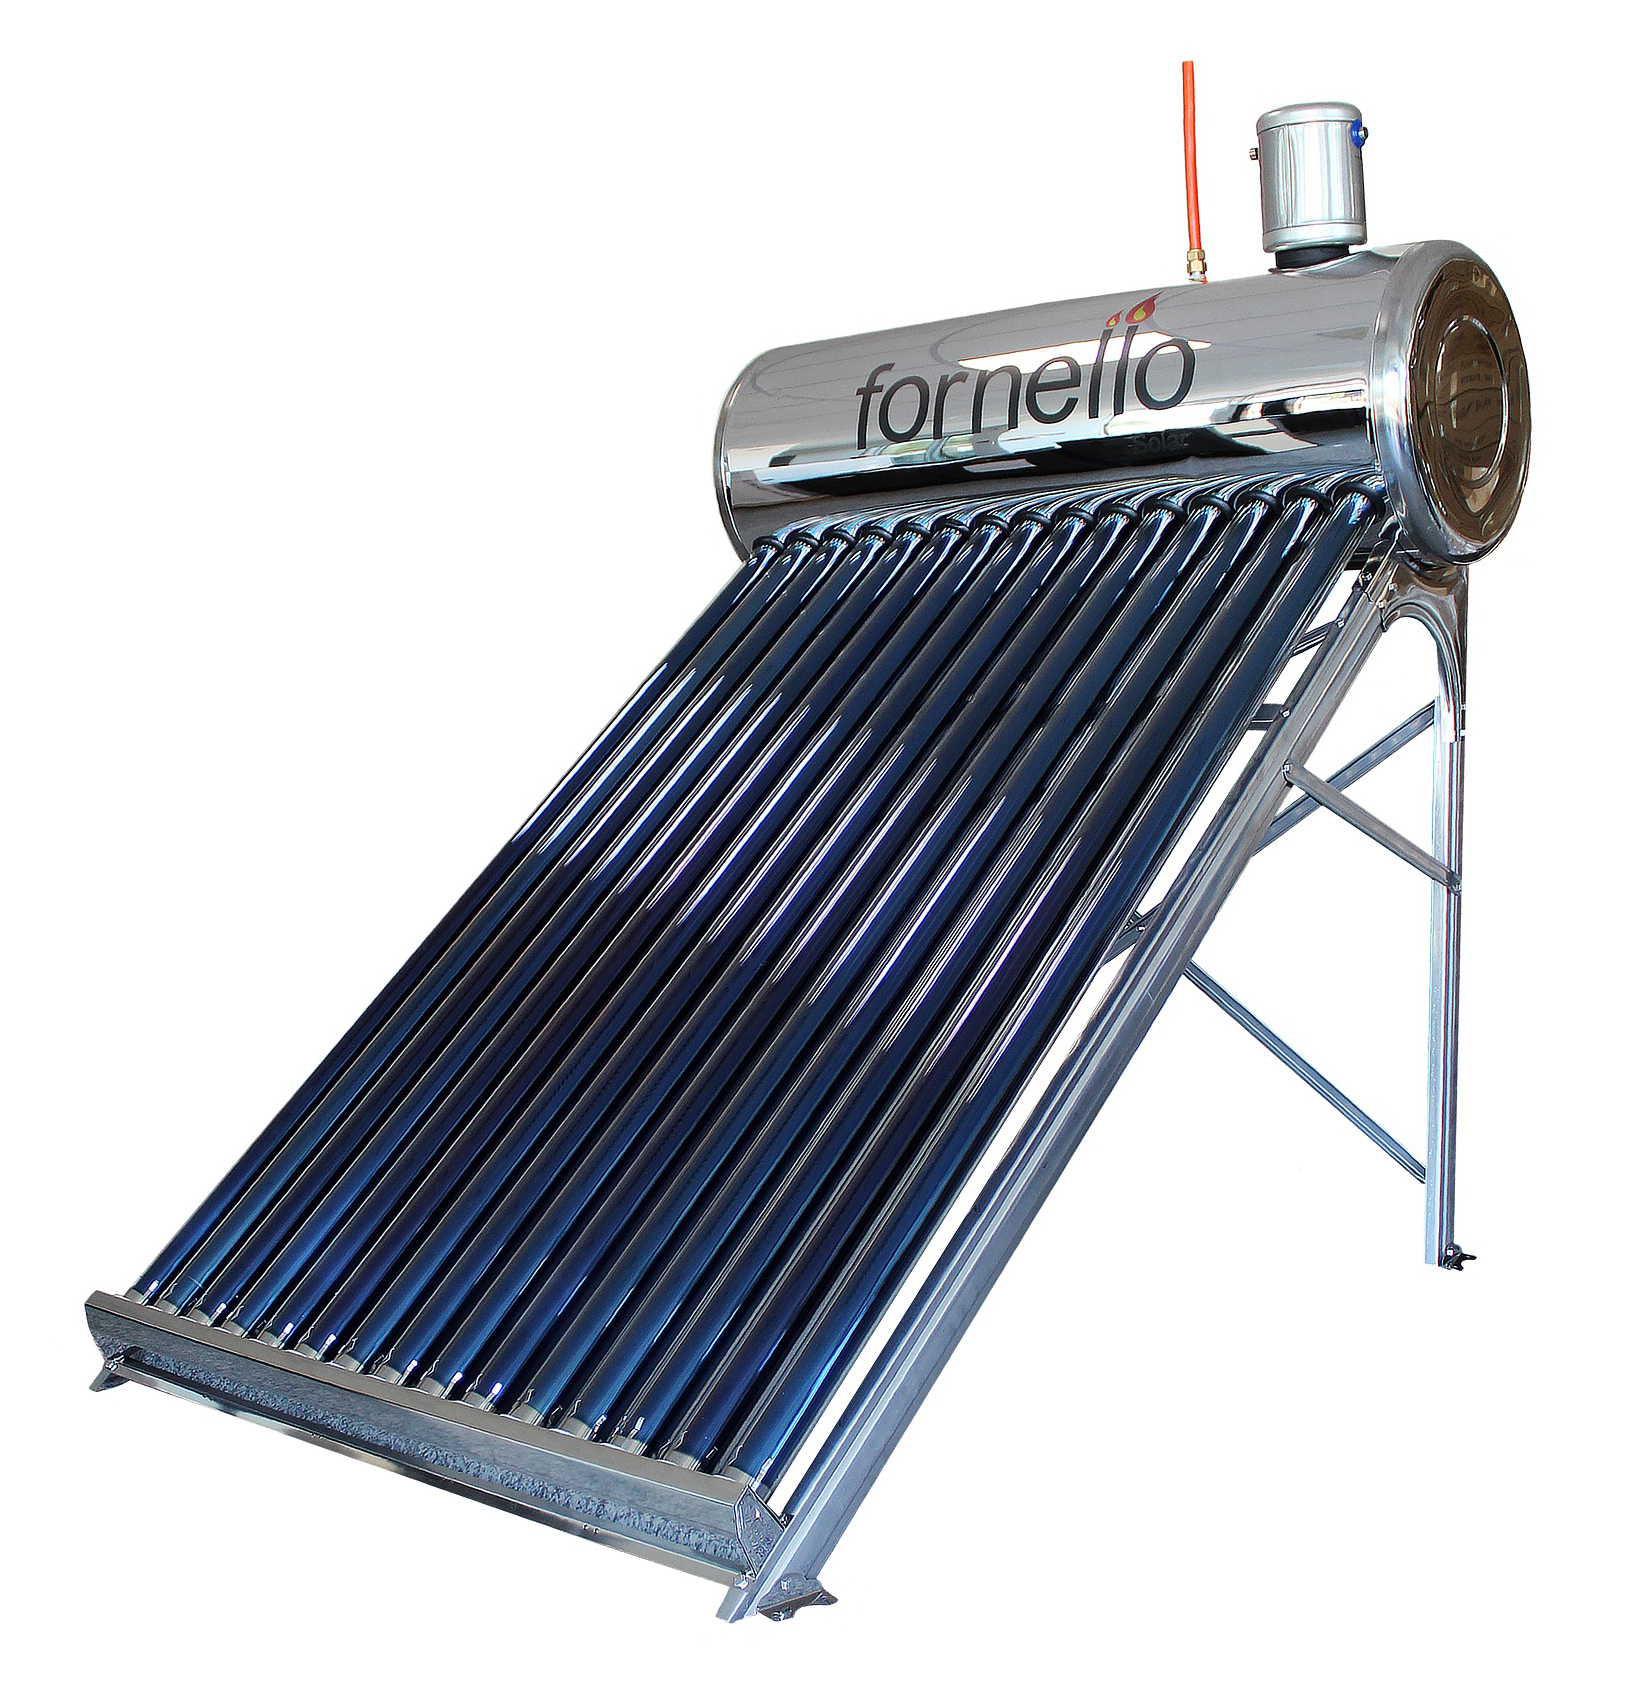 Panou solar nepresurizat Fornello pentru producere apa calda, cu rezervor inox 165 litri si 20 tuburi vidate Fornello imagine noua